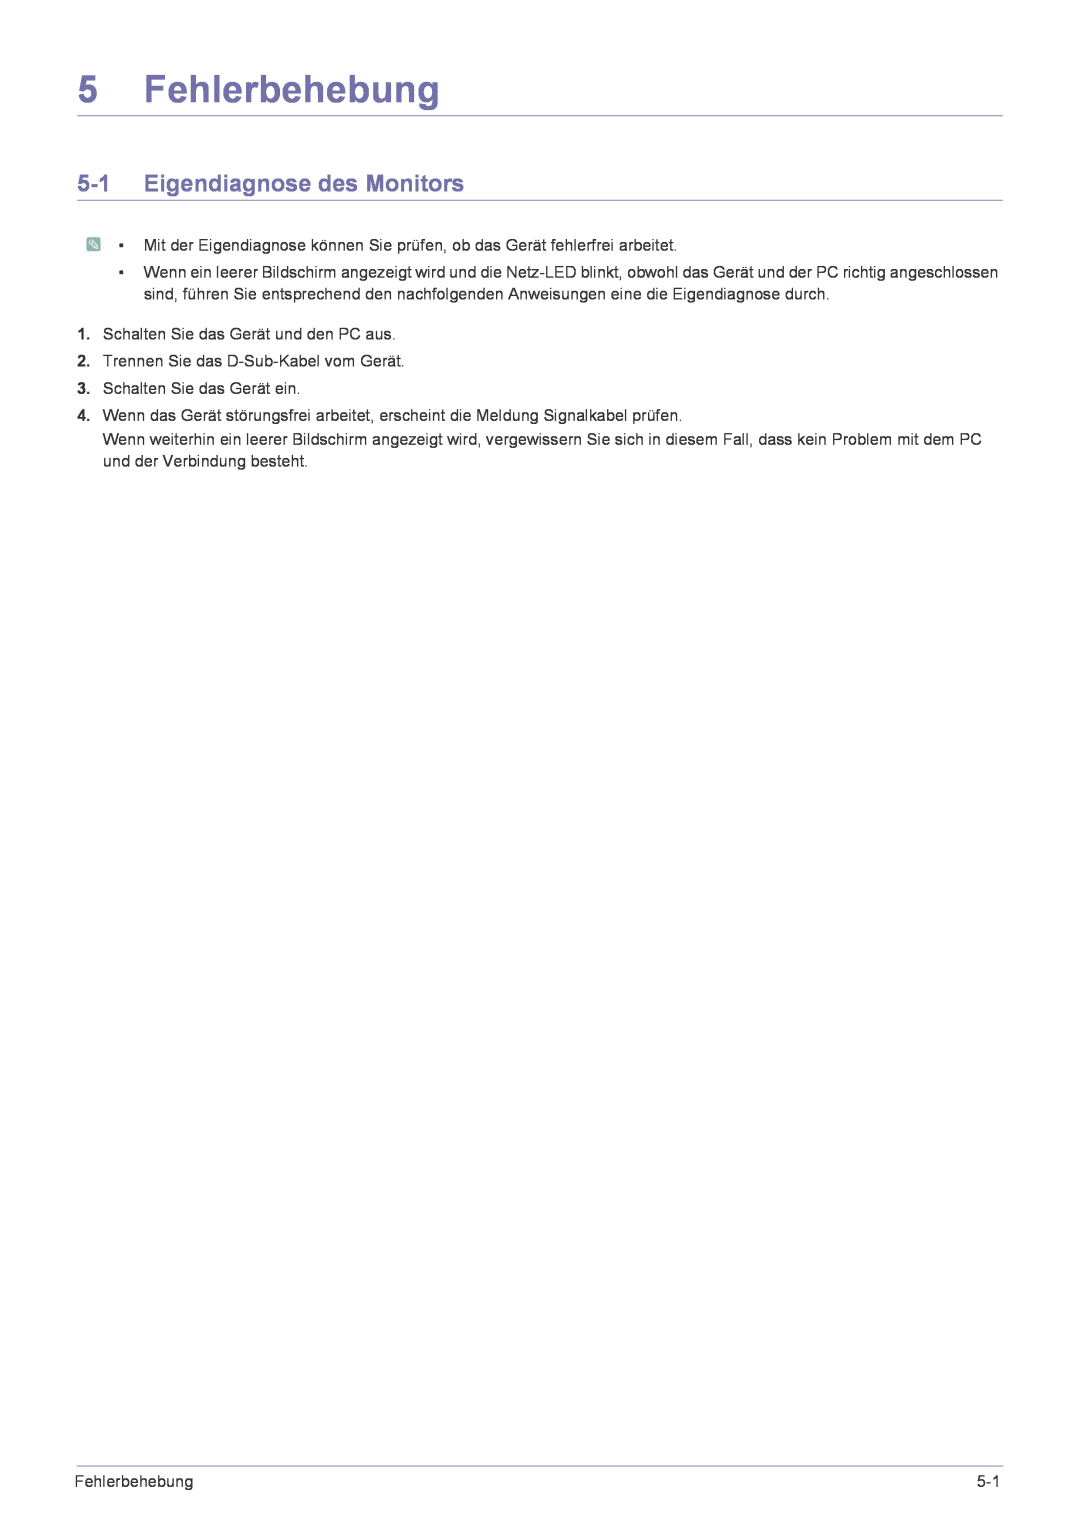 Samsung LS24EMLKF/EN manual Fehlerbehebung, Eigendiagnose des Monitors 